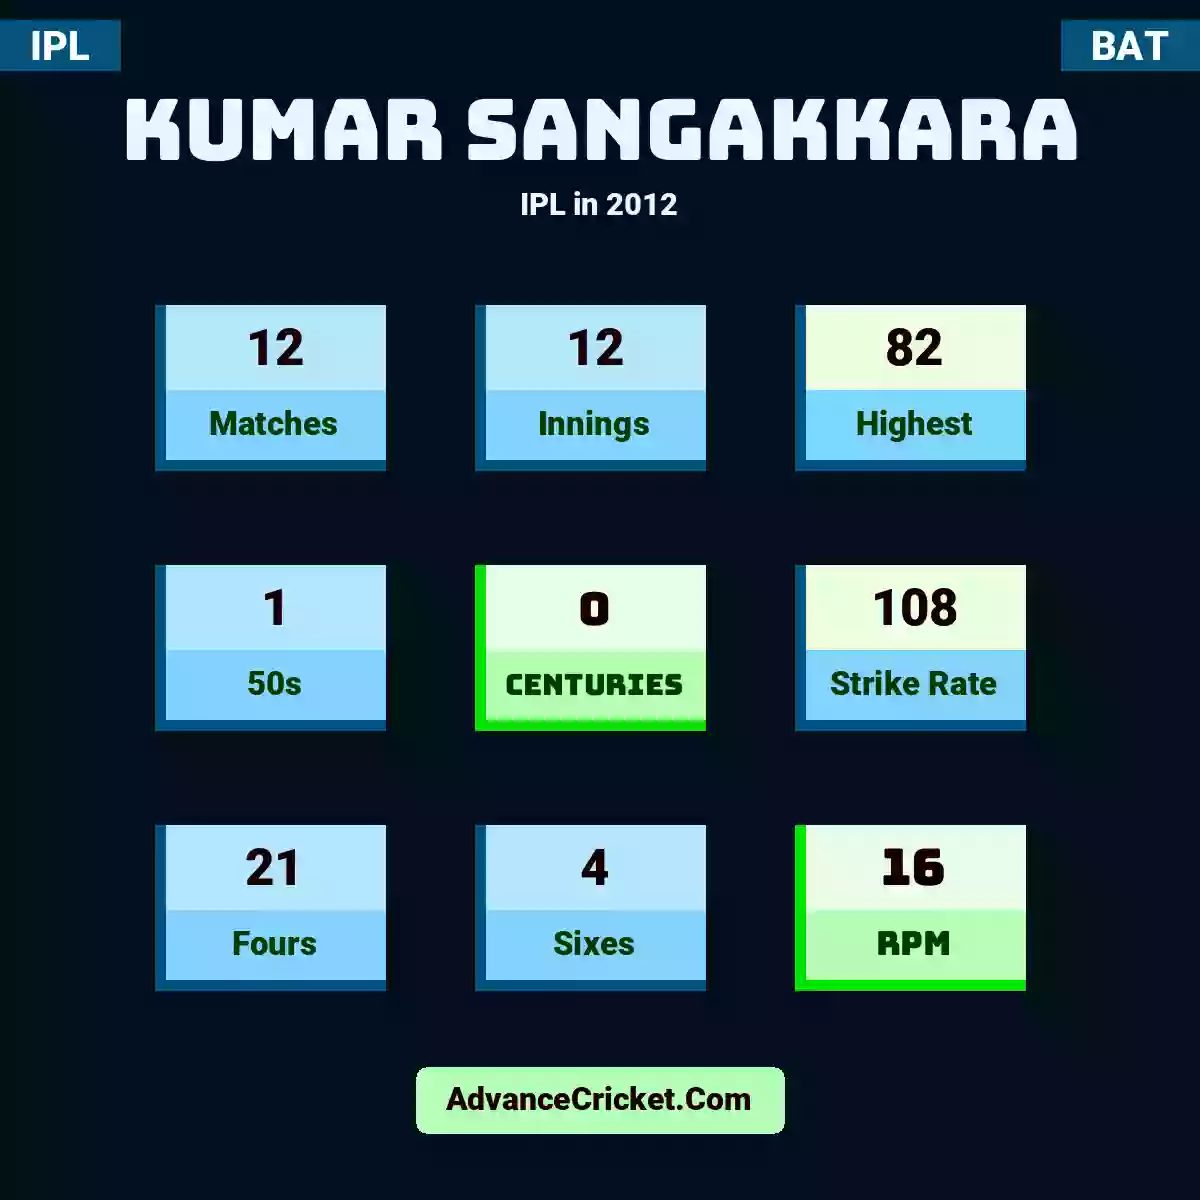 Kumar Sangakkara IPL  in 2012, Kumar Sangakkara played 12 matches, scored 82 runs as highest, 1 half-centuries, and 0 centuries, with a strike rate of 108. K.Sangakkara hit 21 fours and 4 sixes, with an RPM of 16.